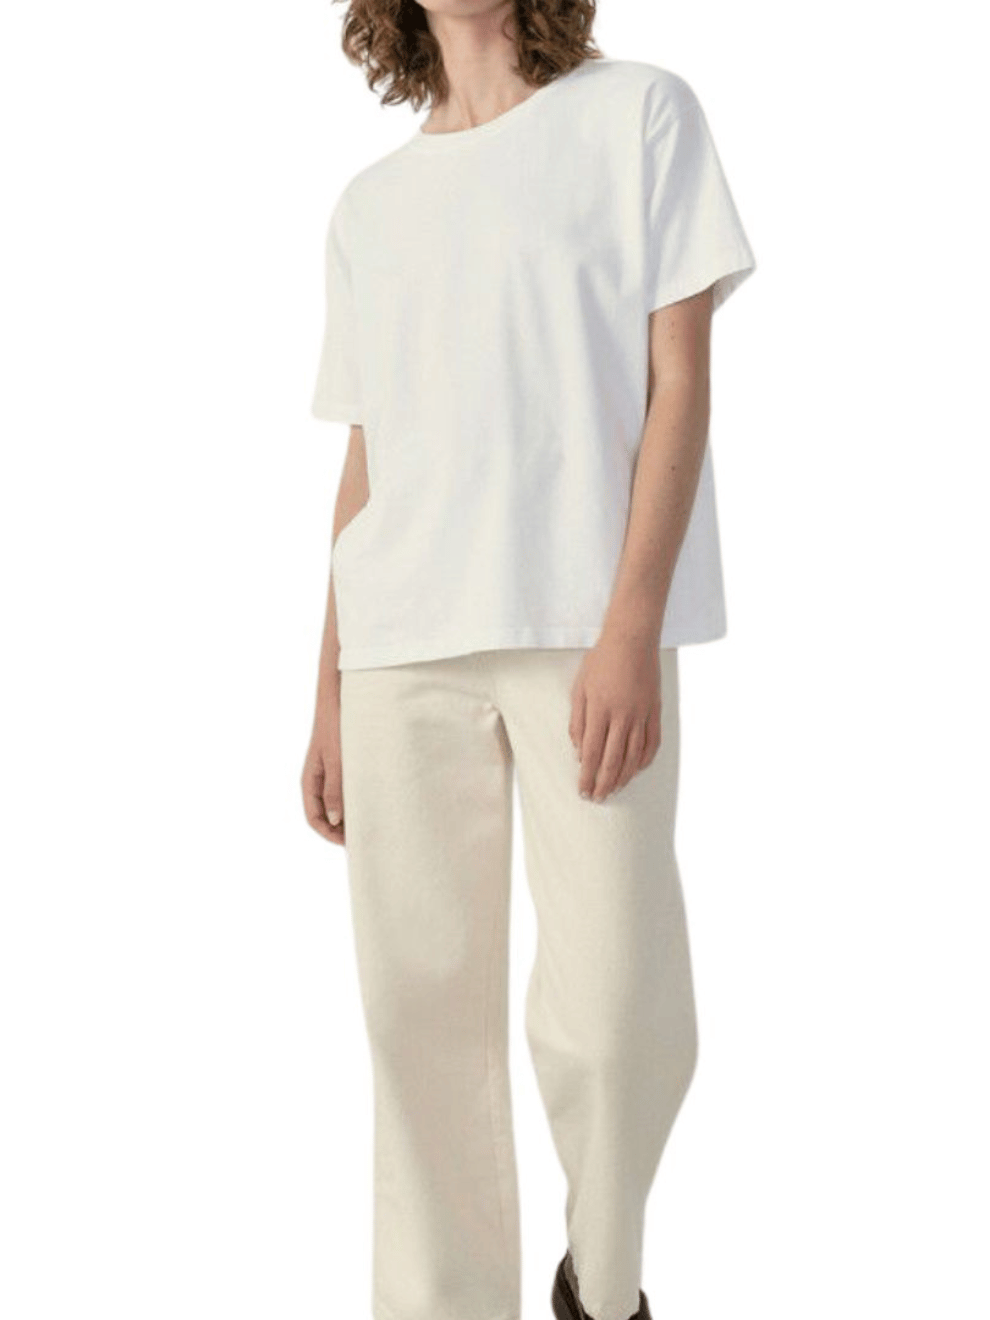 Fizvalley T-Shirt Round Neck in White